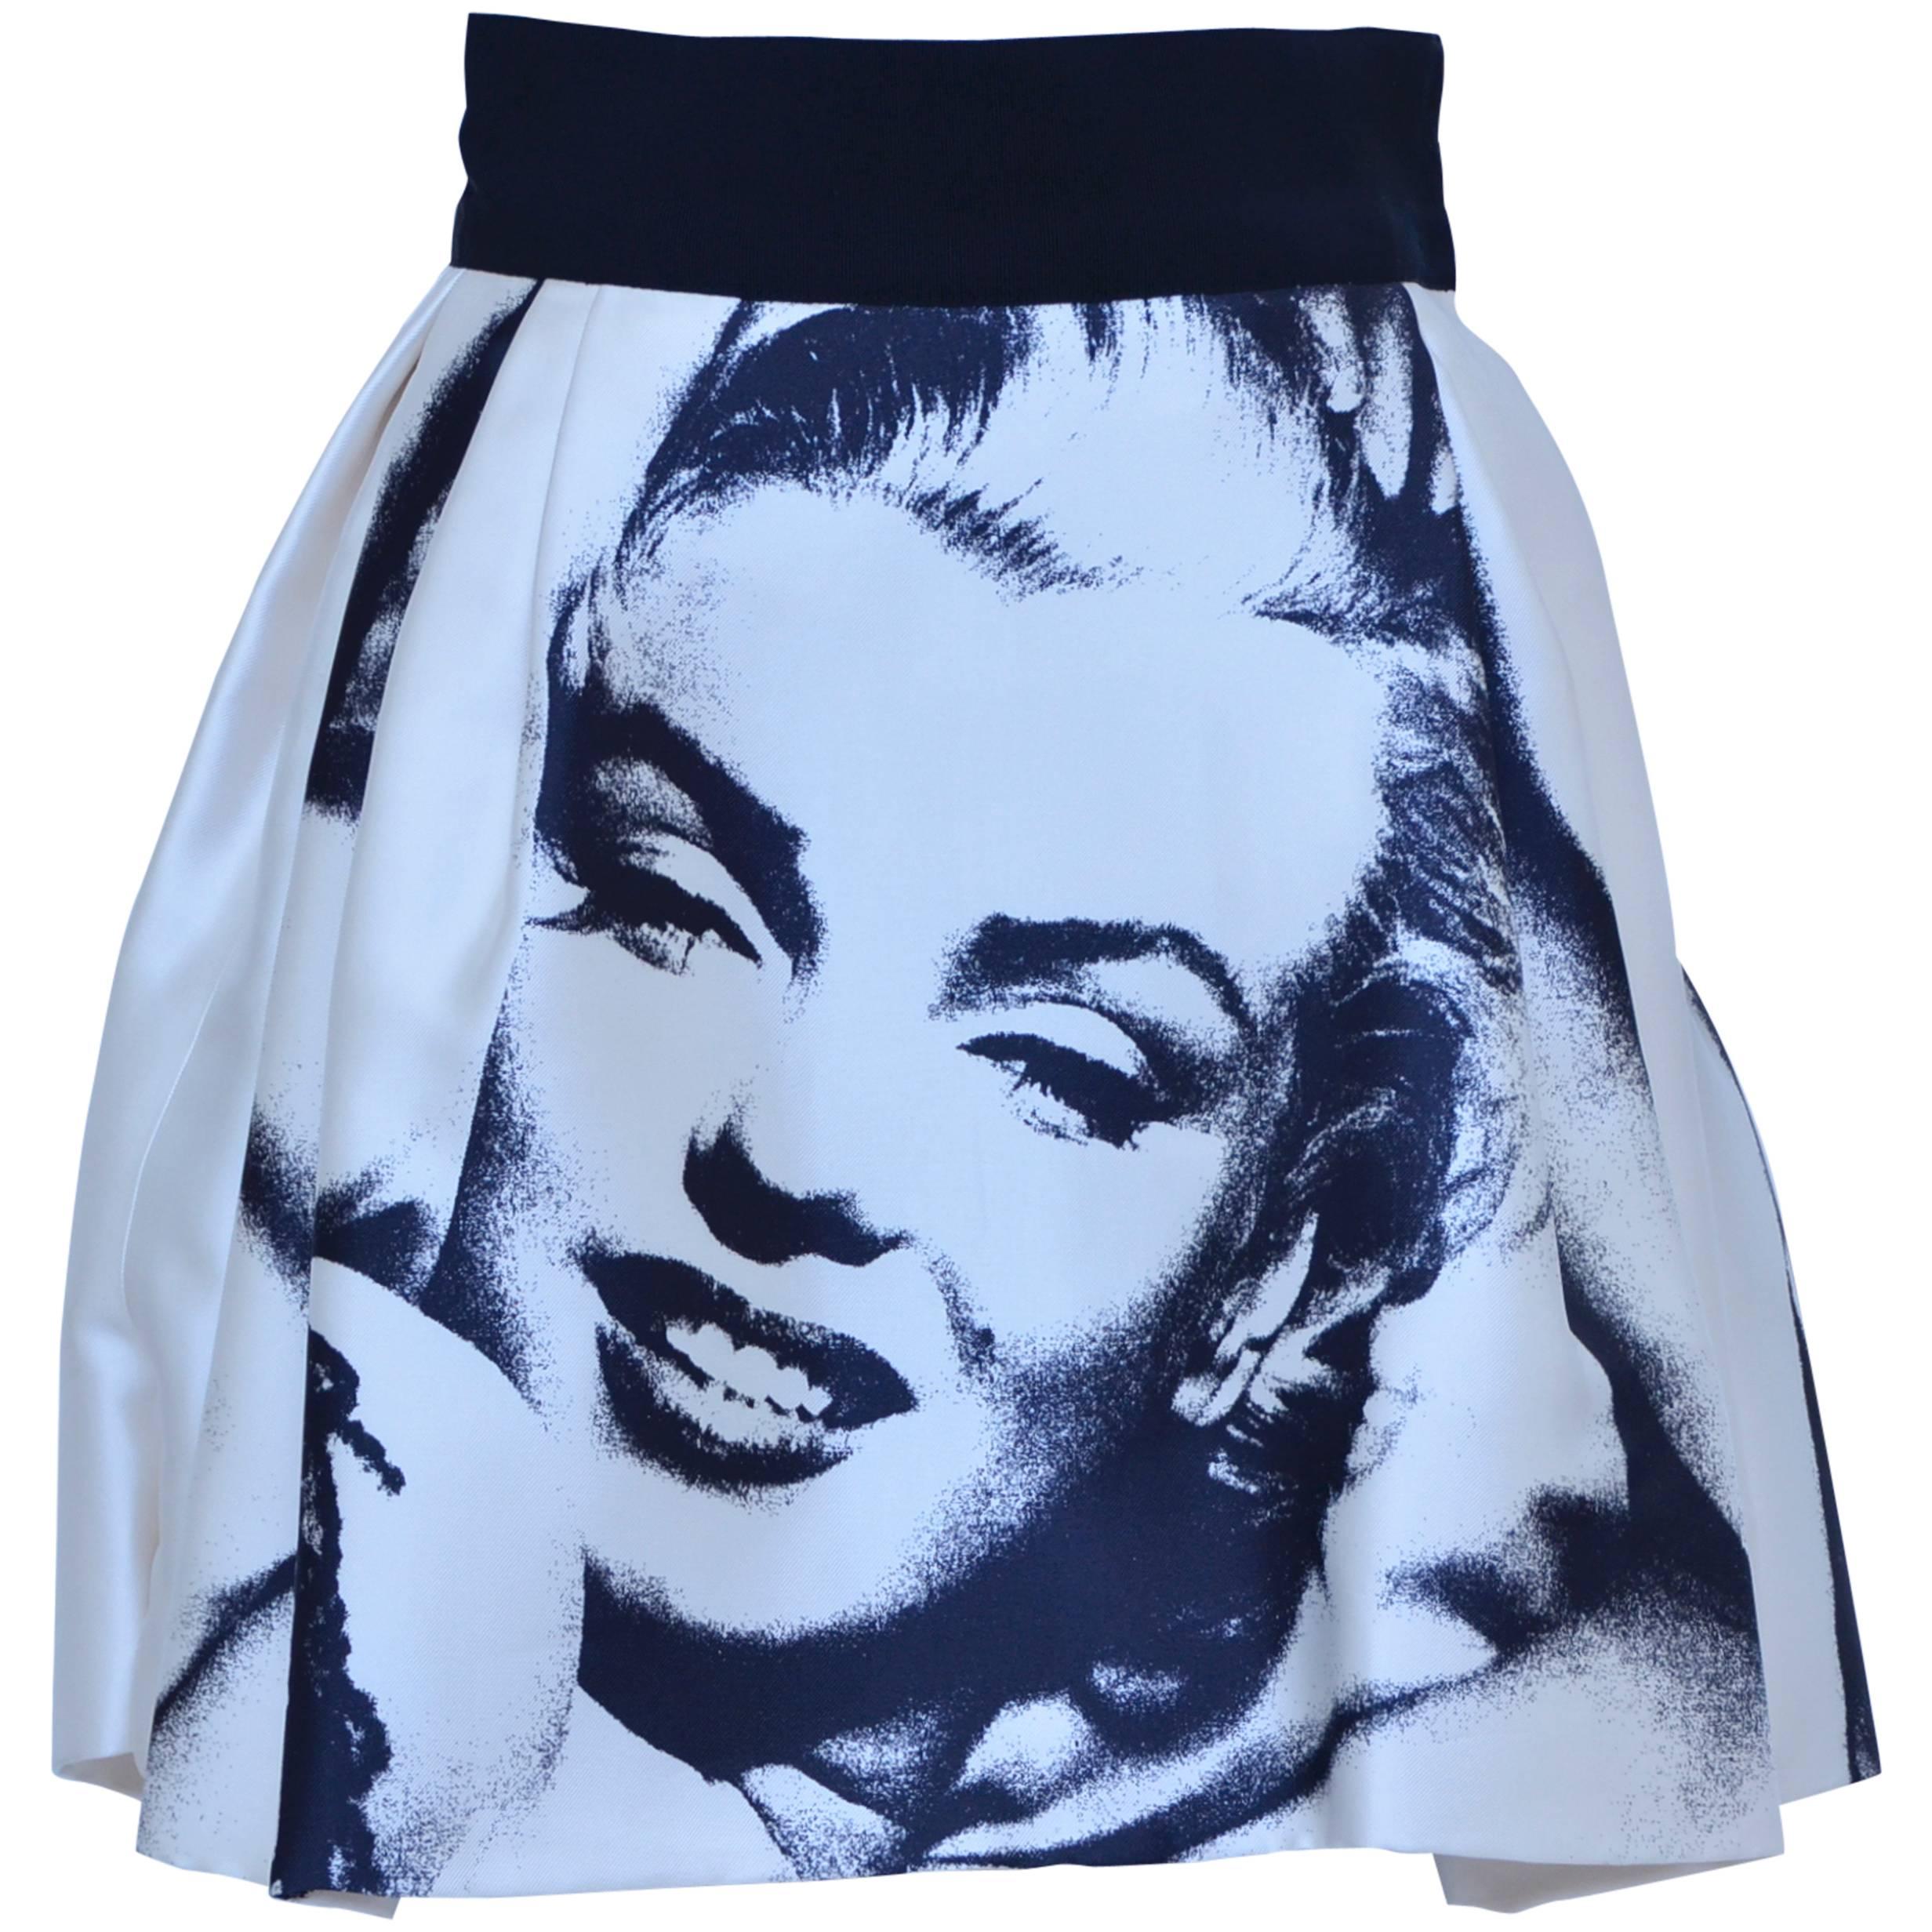  Marilyn Monroe Print  Dolce & Gabbana  Skirt  New 38